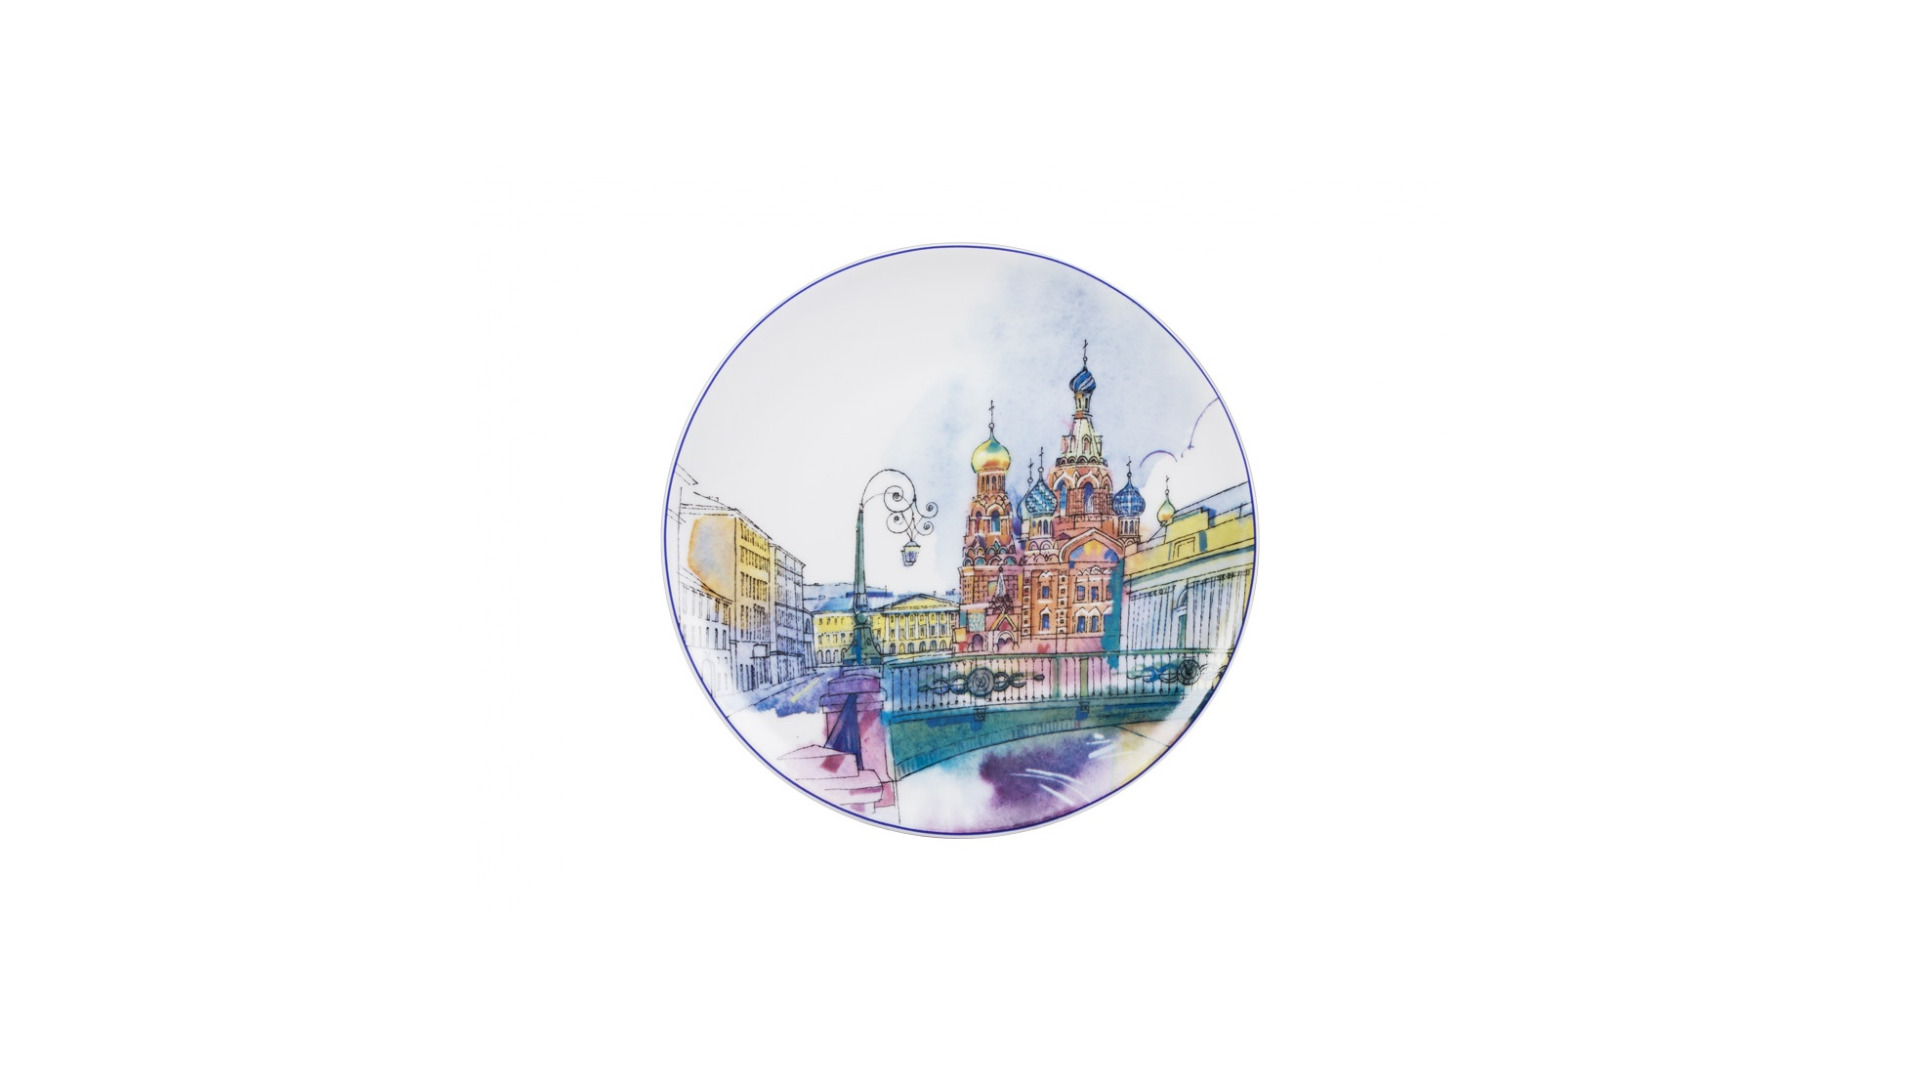 Тарелка декоративная ИФЗ Санкт-Петербург  Итальянский мост Эллипс 19,5 см, фарфор твердый